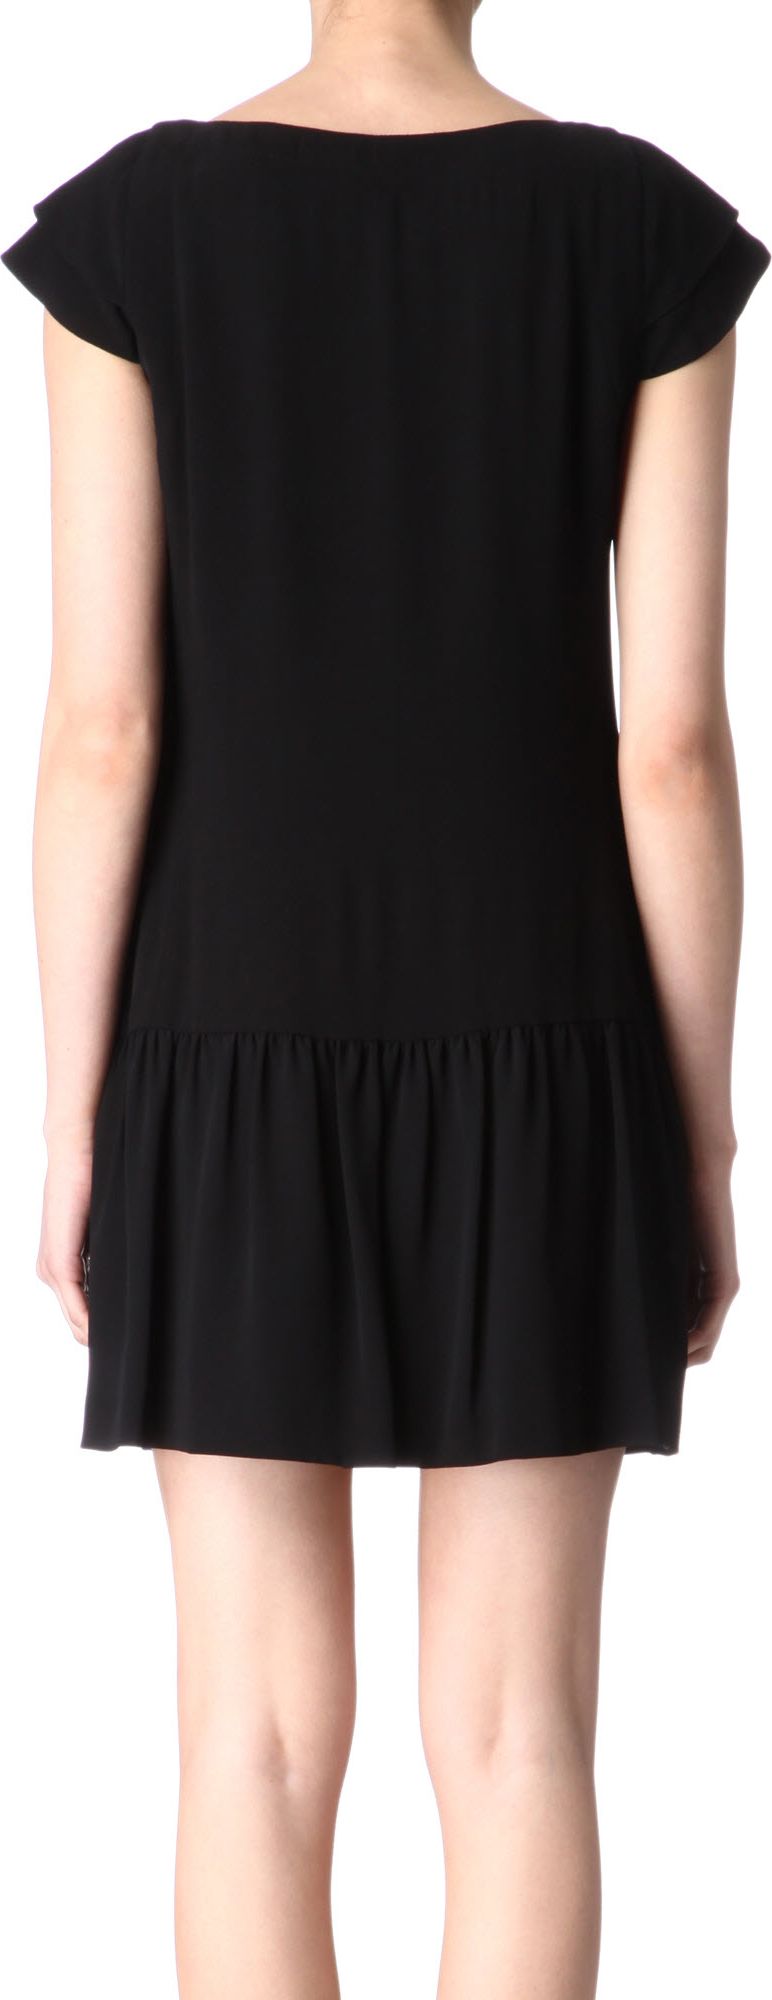 Reiss Zara Drop Waist Dress in Black - Lyst